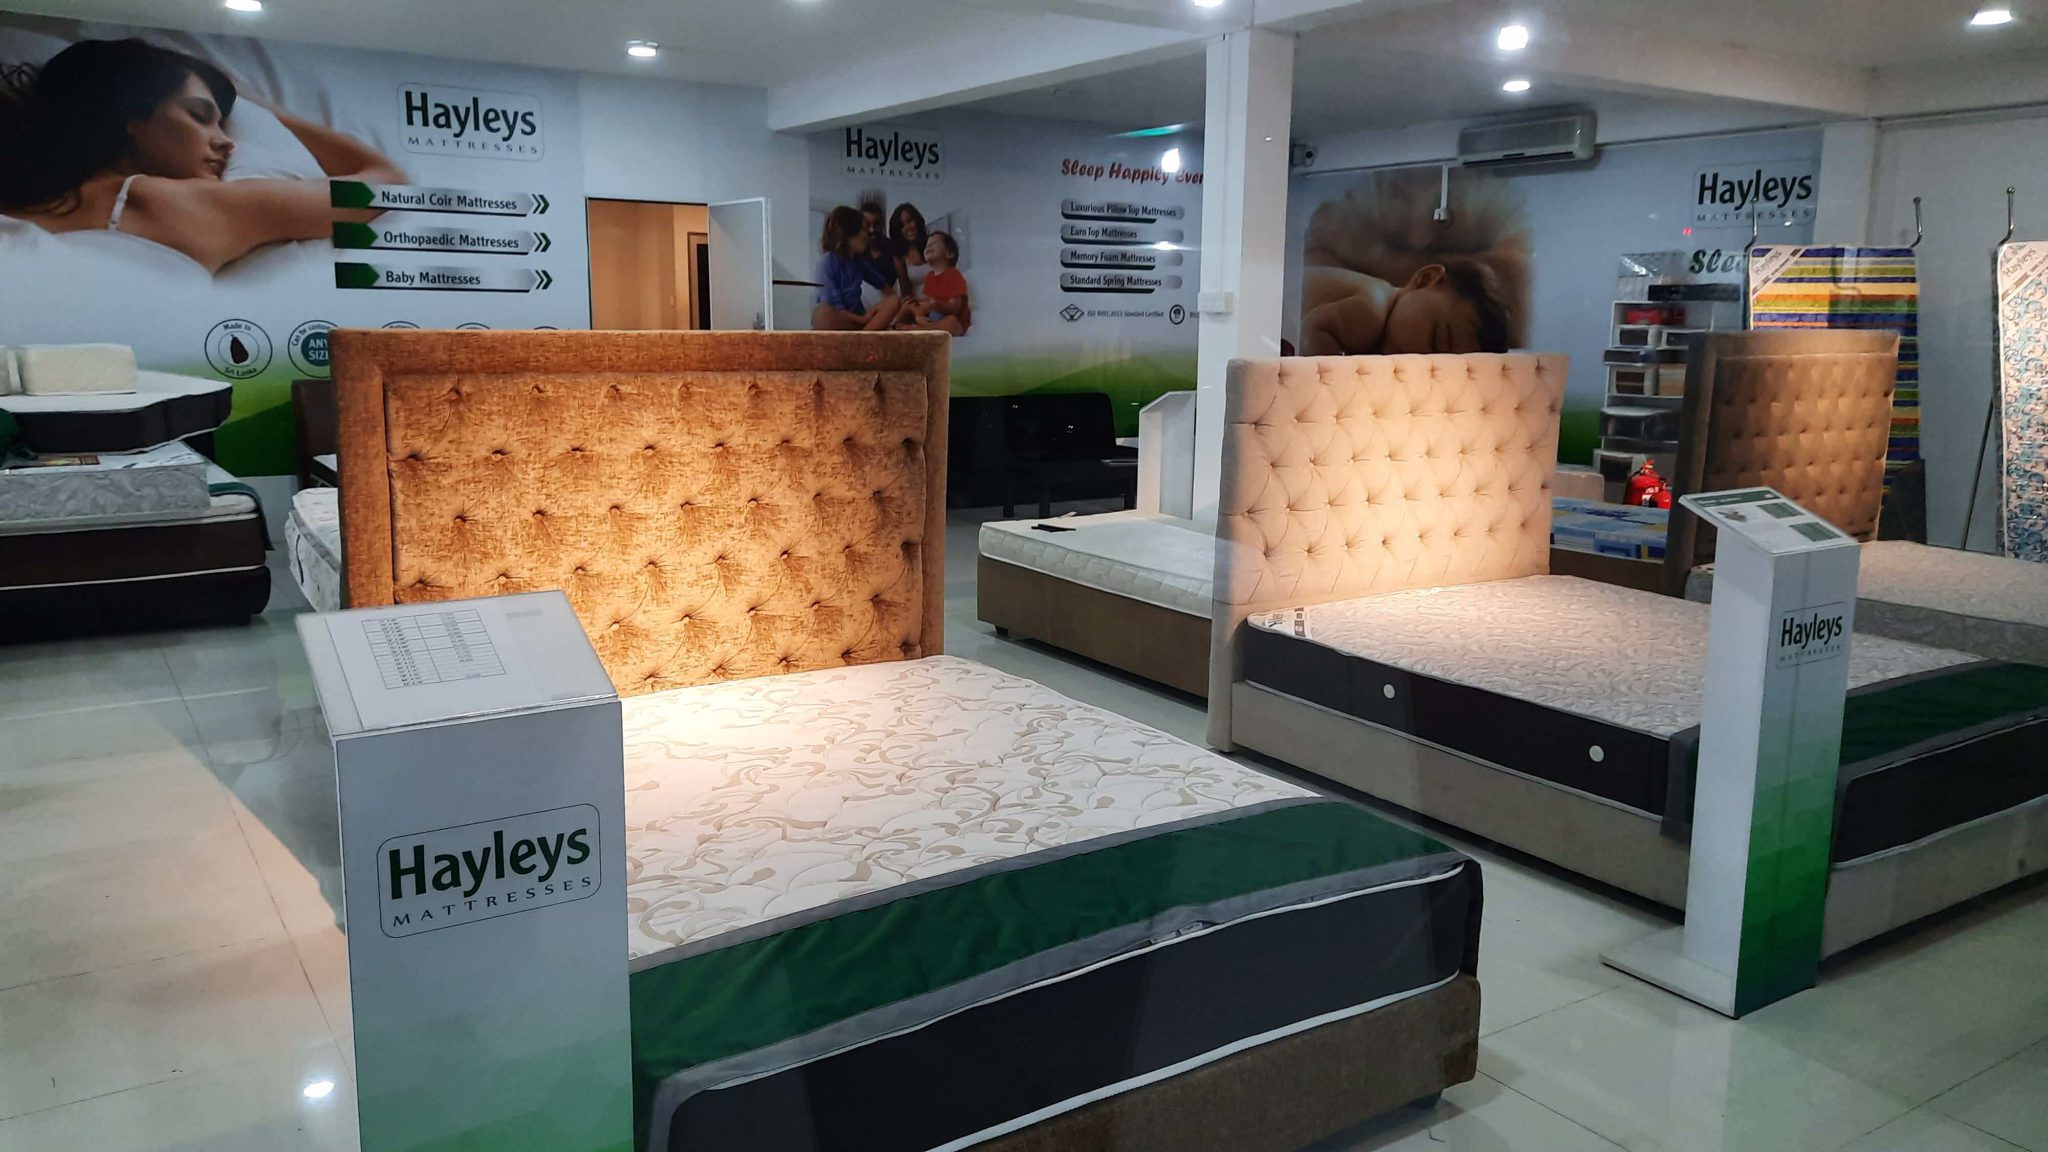 hayleys mattress prices in sri lanka